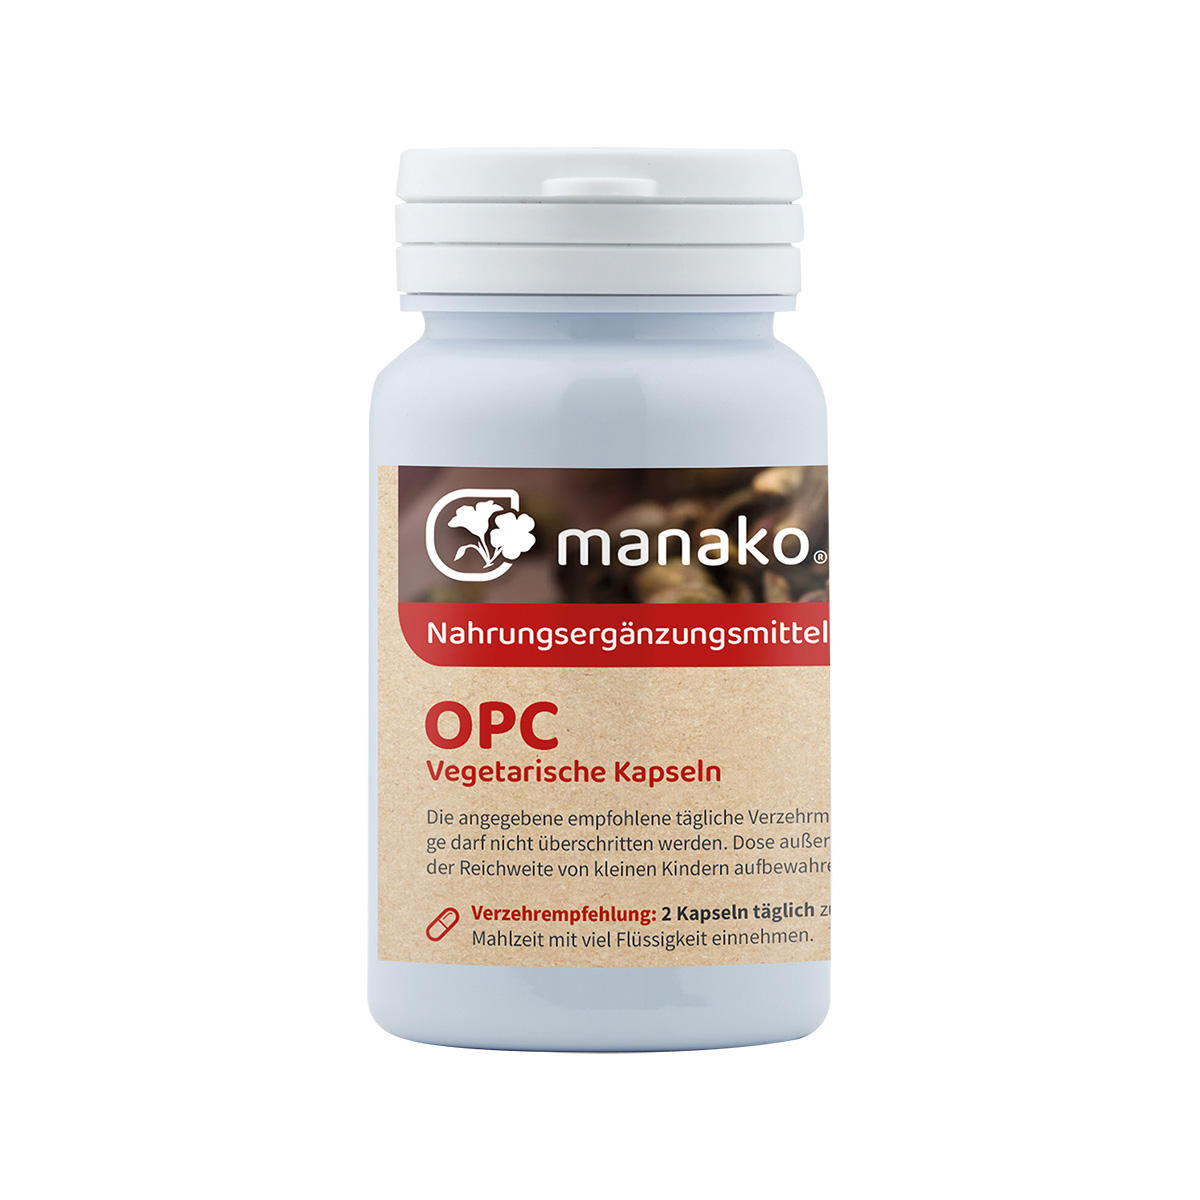 manako OPC vegetarische Kapseln, 110 Stück, Dose a 20,9 g